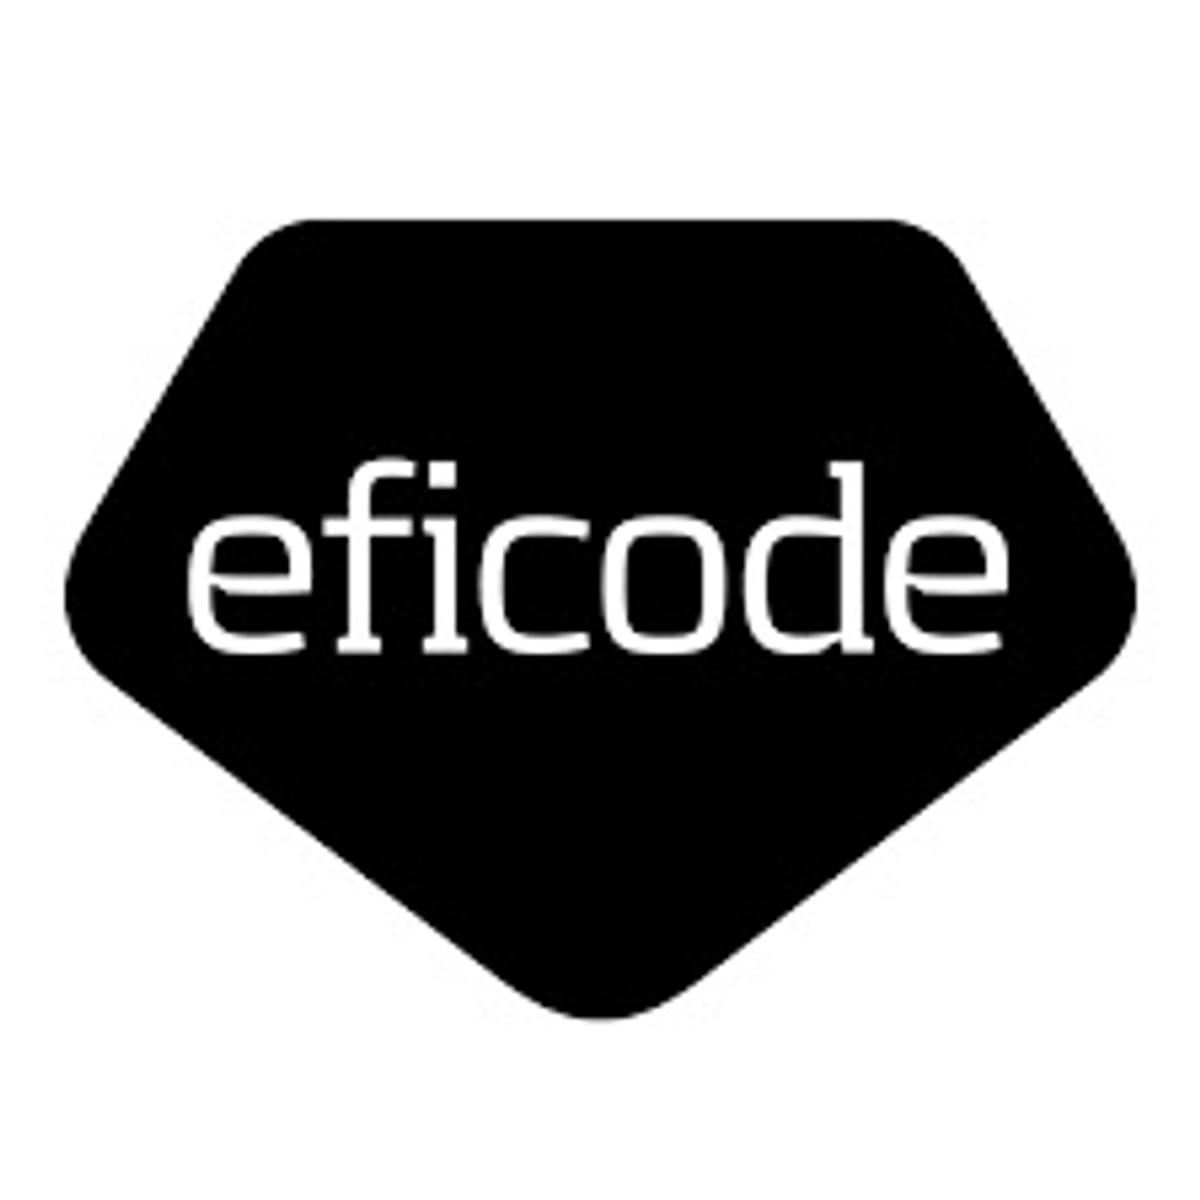 DevOps-platform van Eficode erkend in Gartner Hype Cycle 2020 image